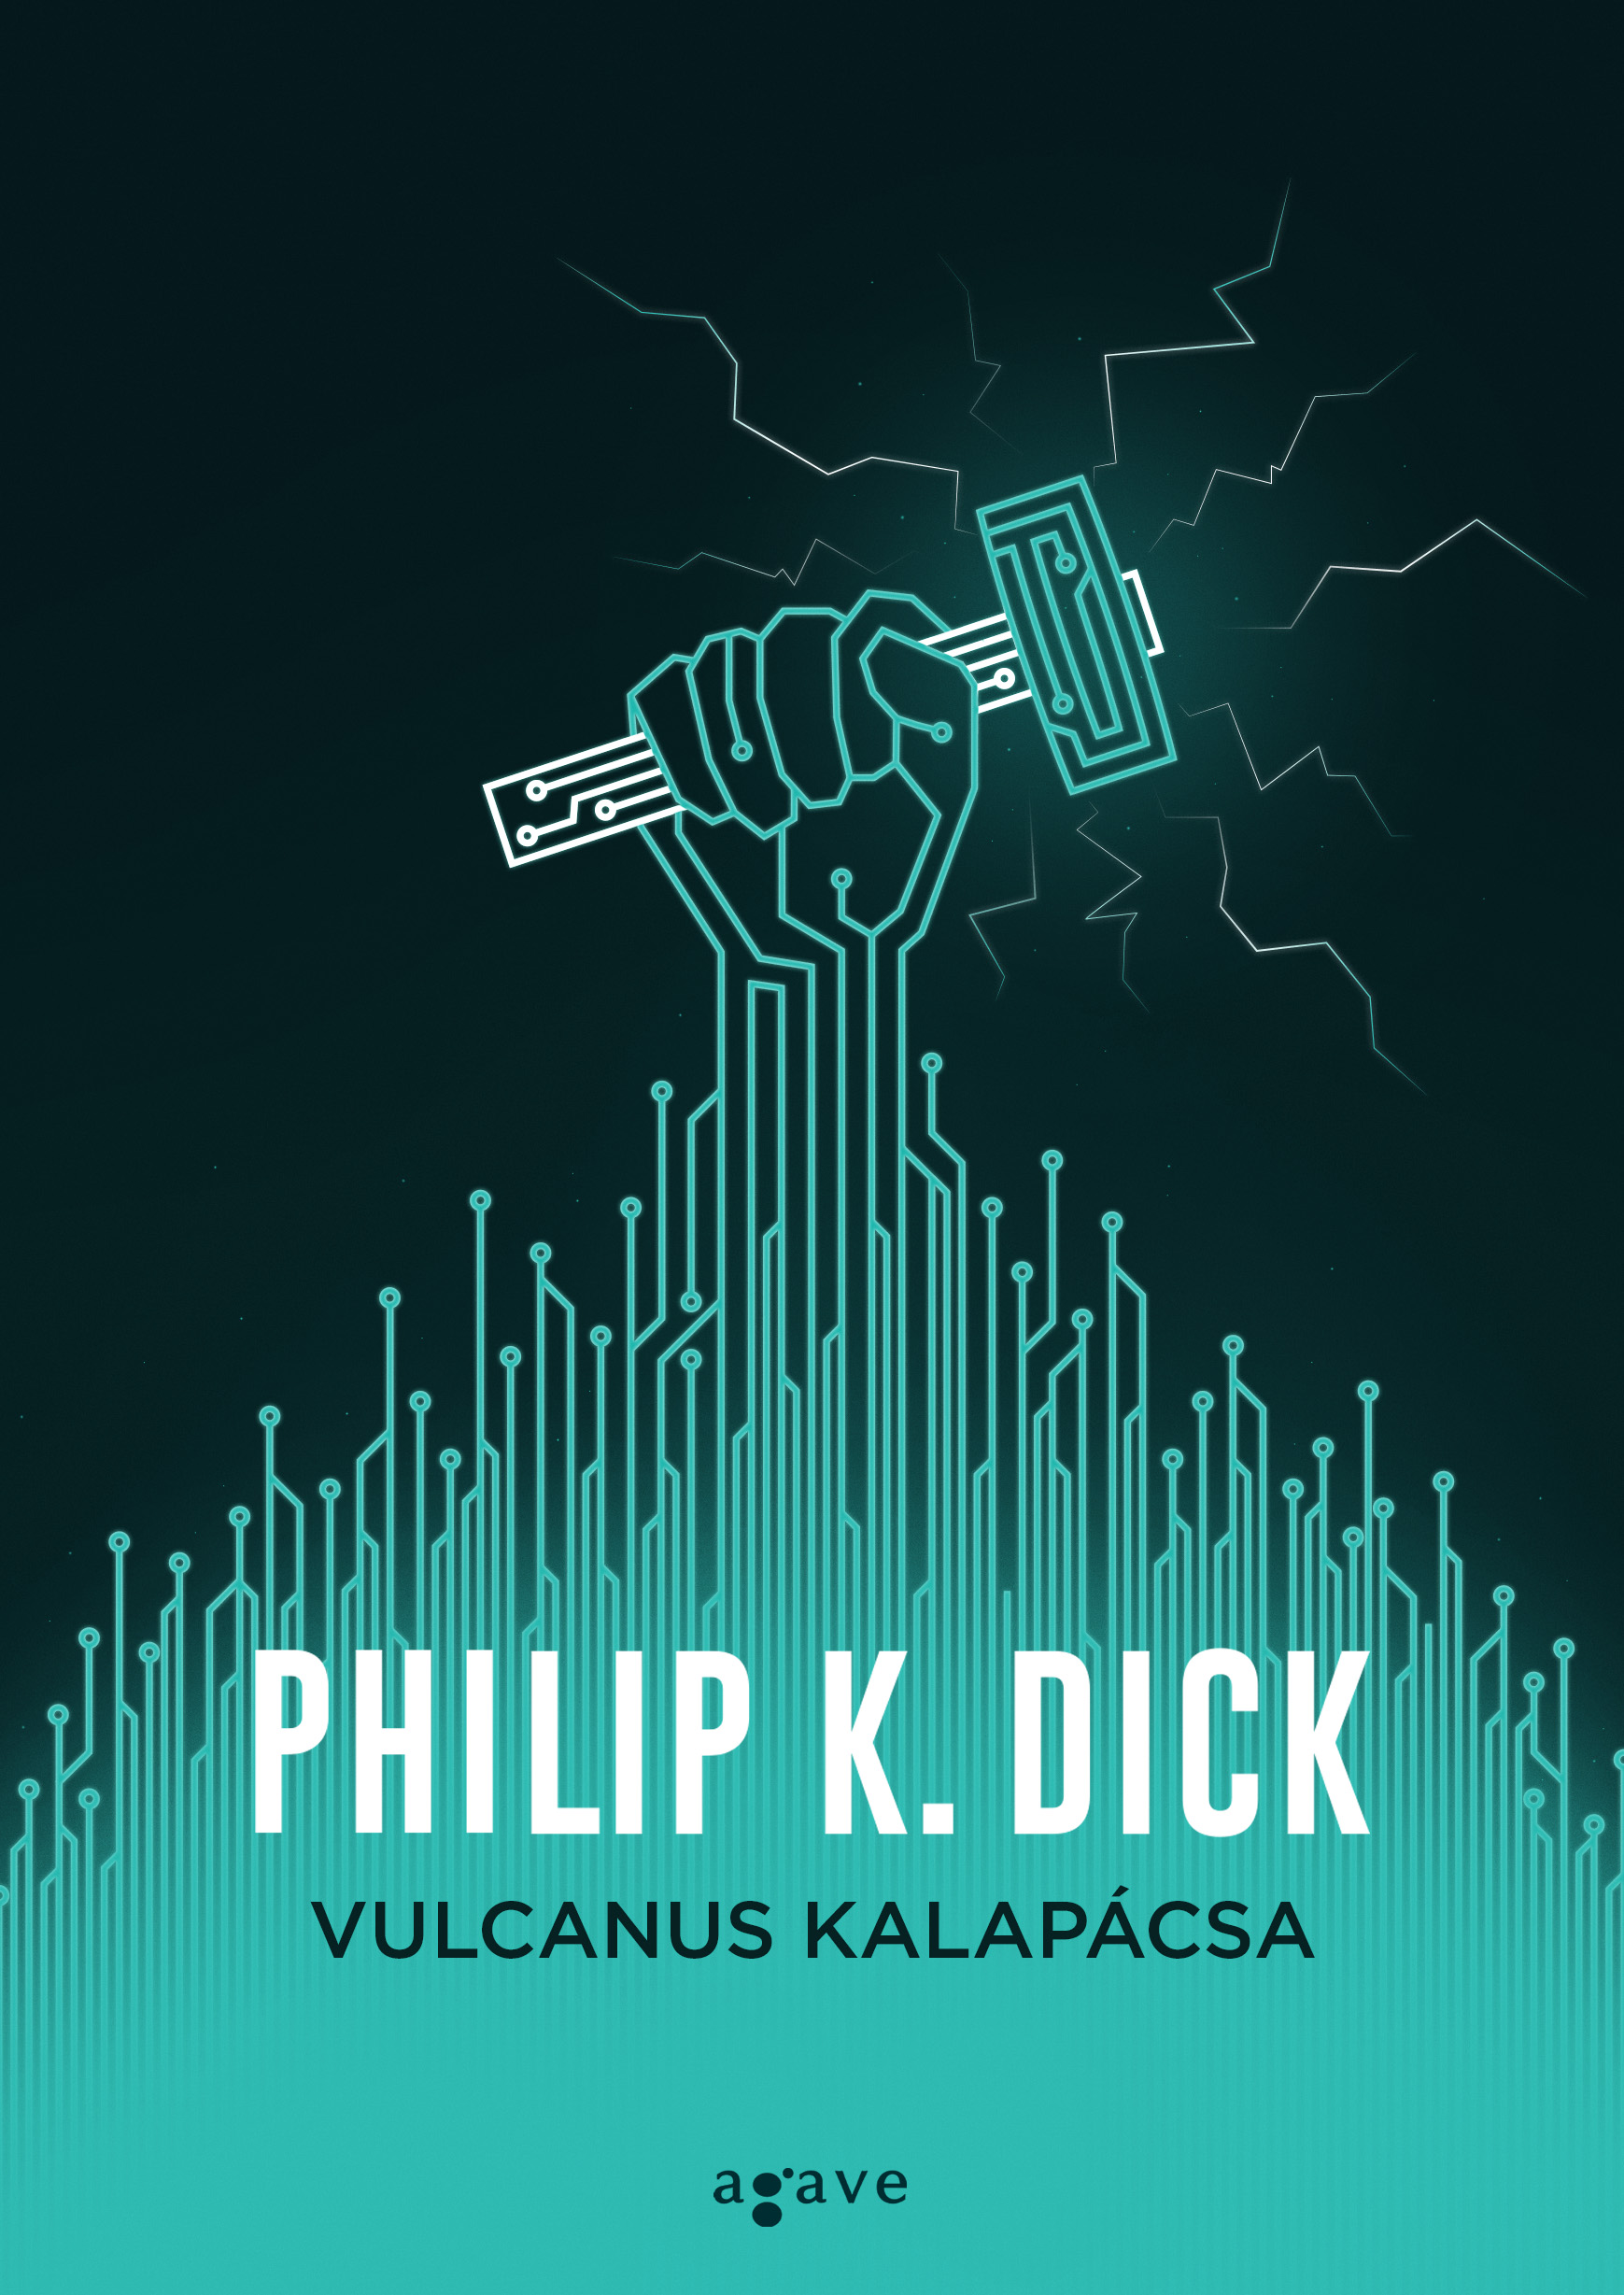 philip_k_dick_vulcanus_kalapacsa_b1.jpeg